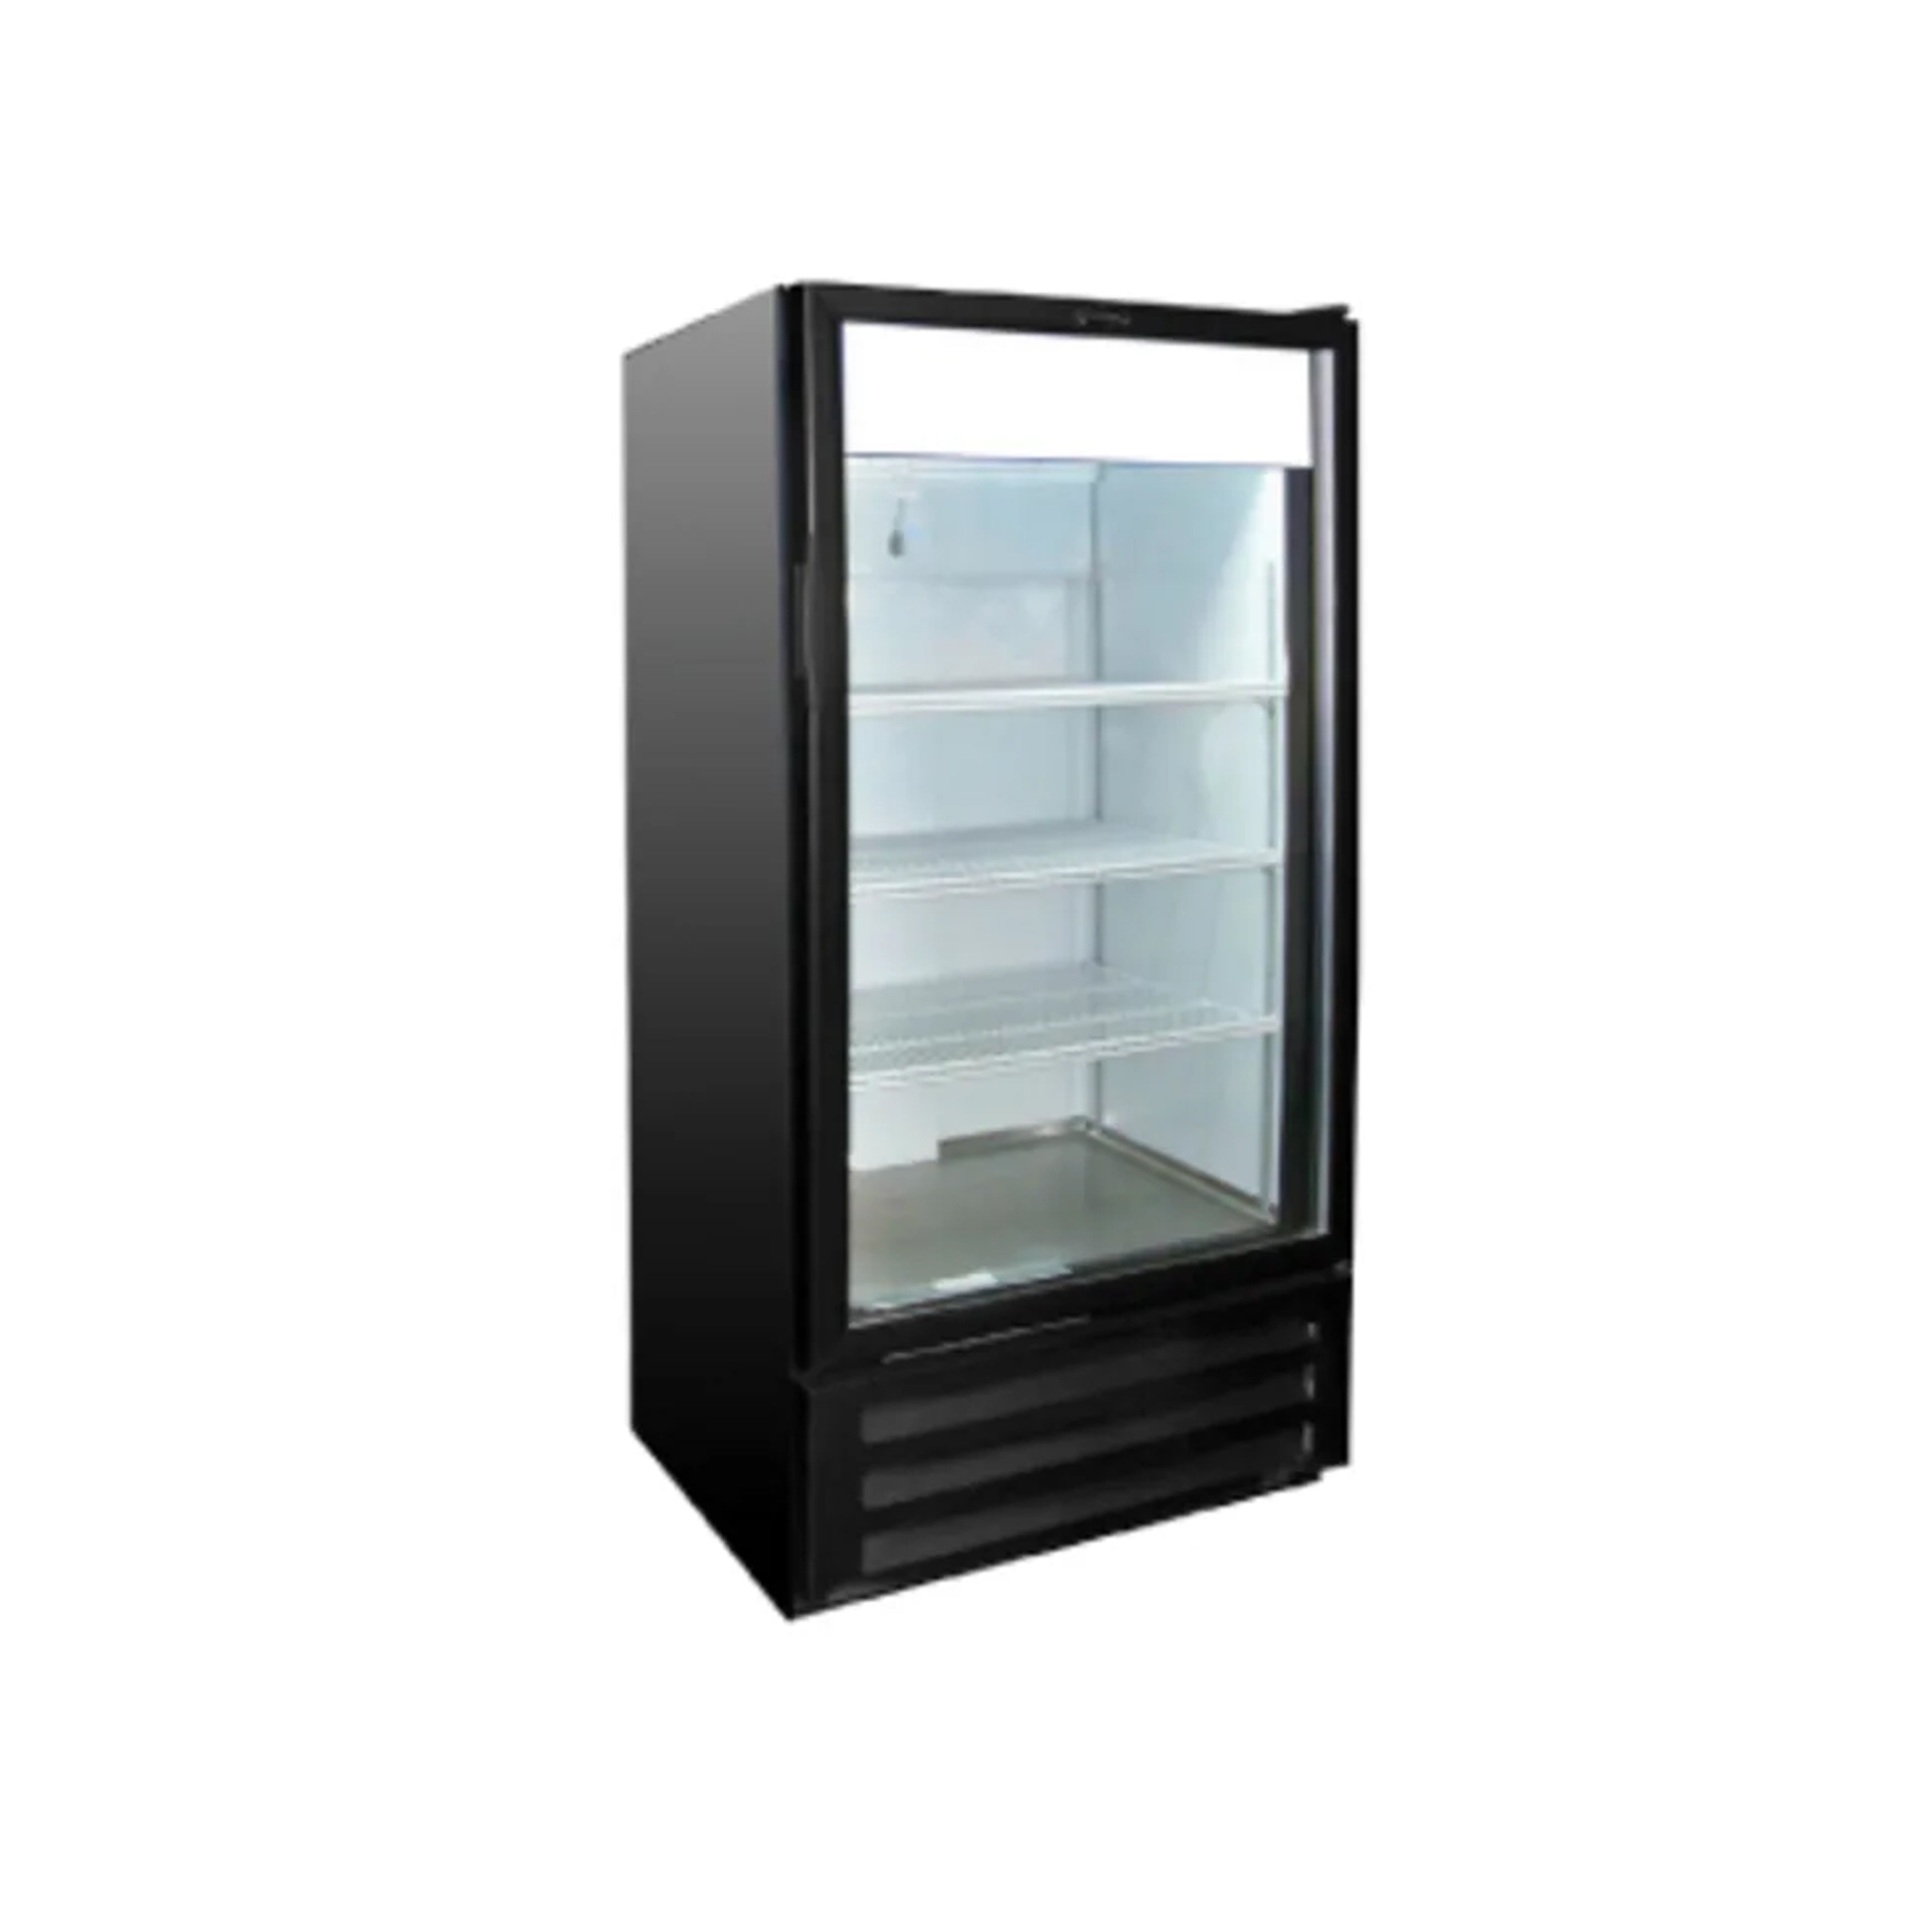 Excellence Industries - VR-10HC, 25" Commercial 1 Glass Door Merchandiser Refrigerator 10 cu.ft.